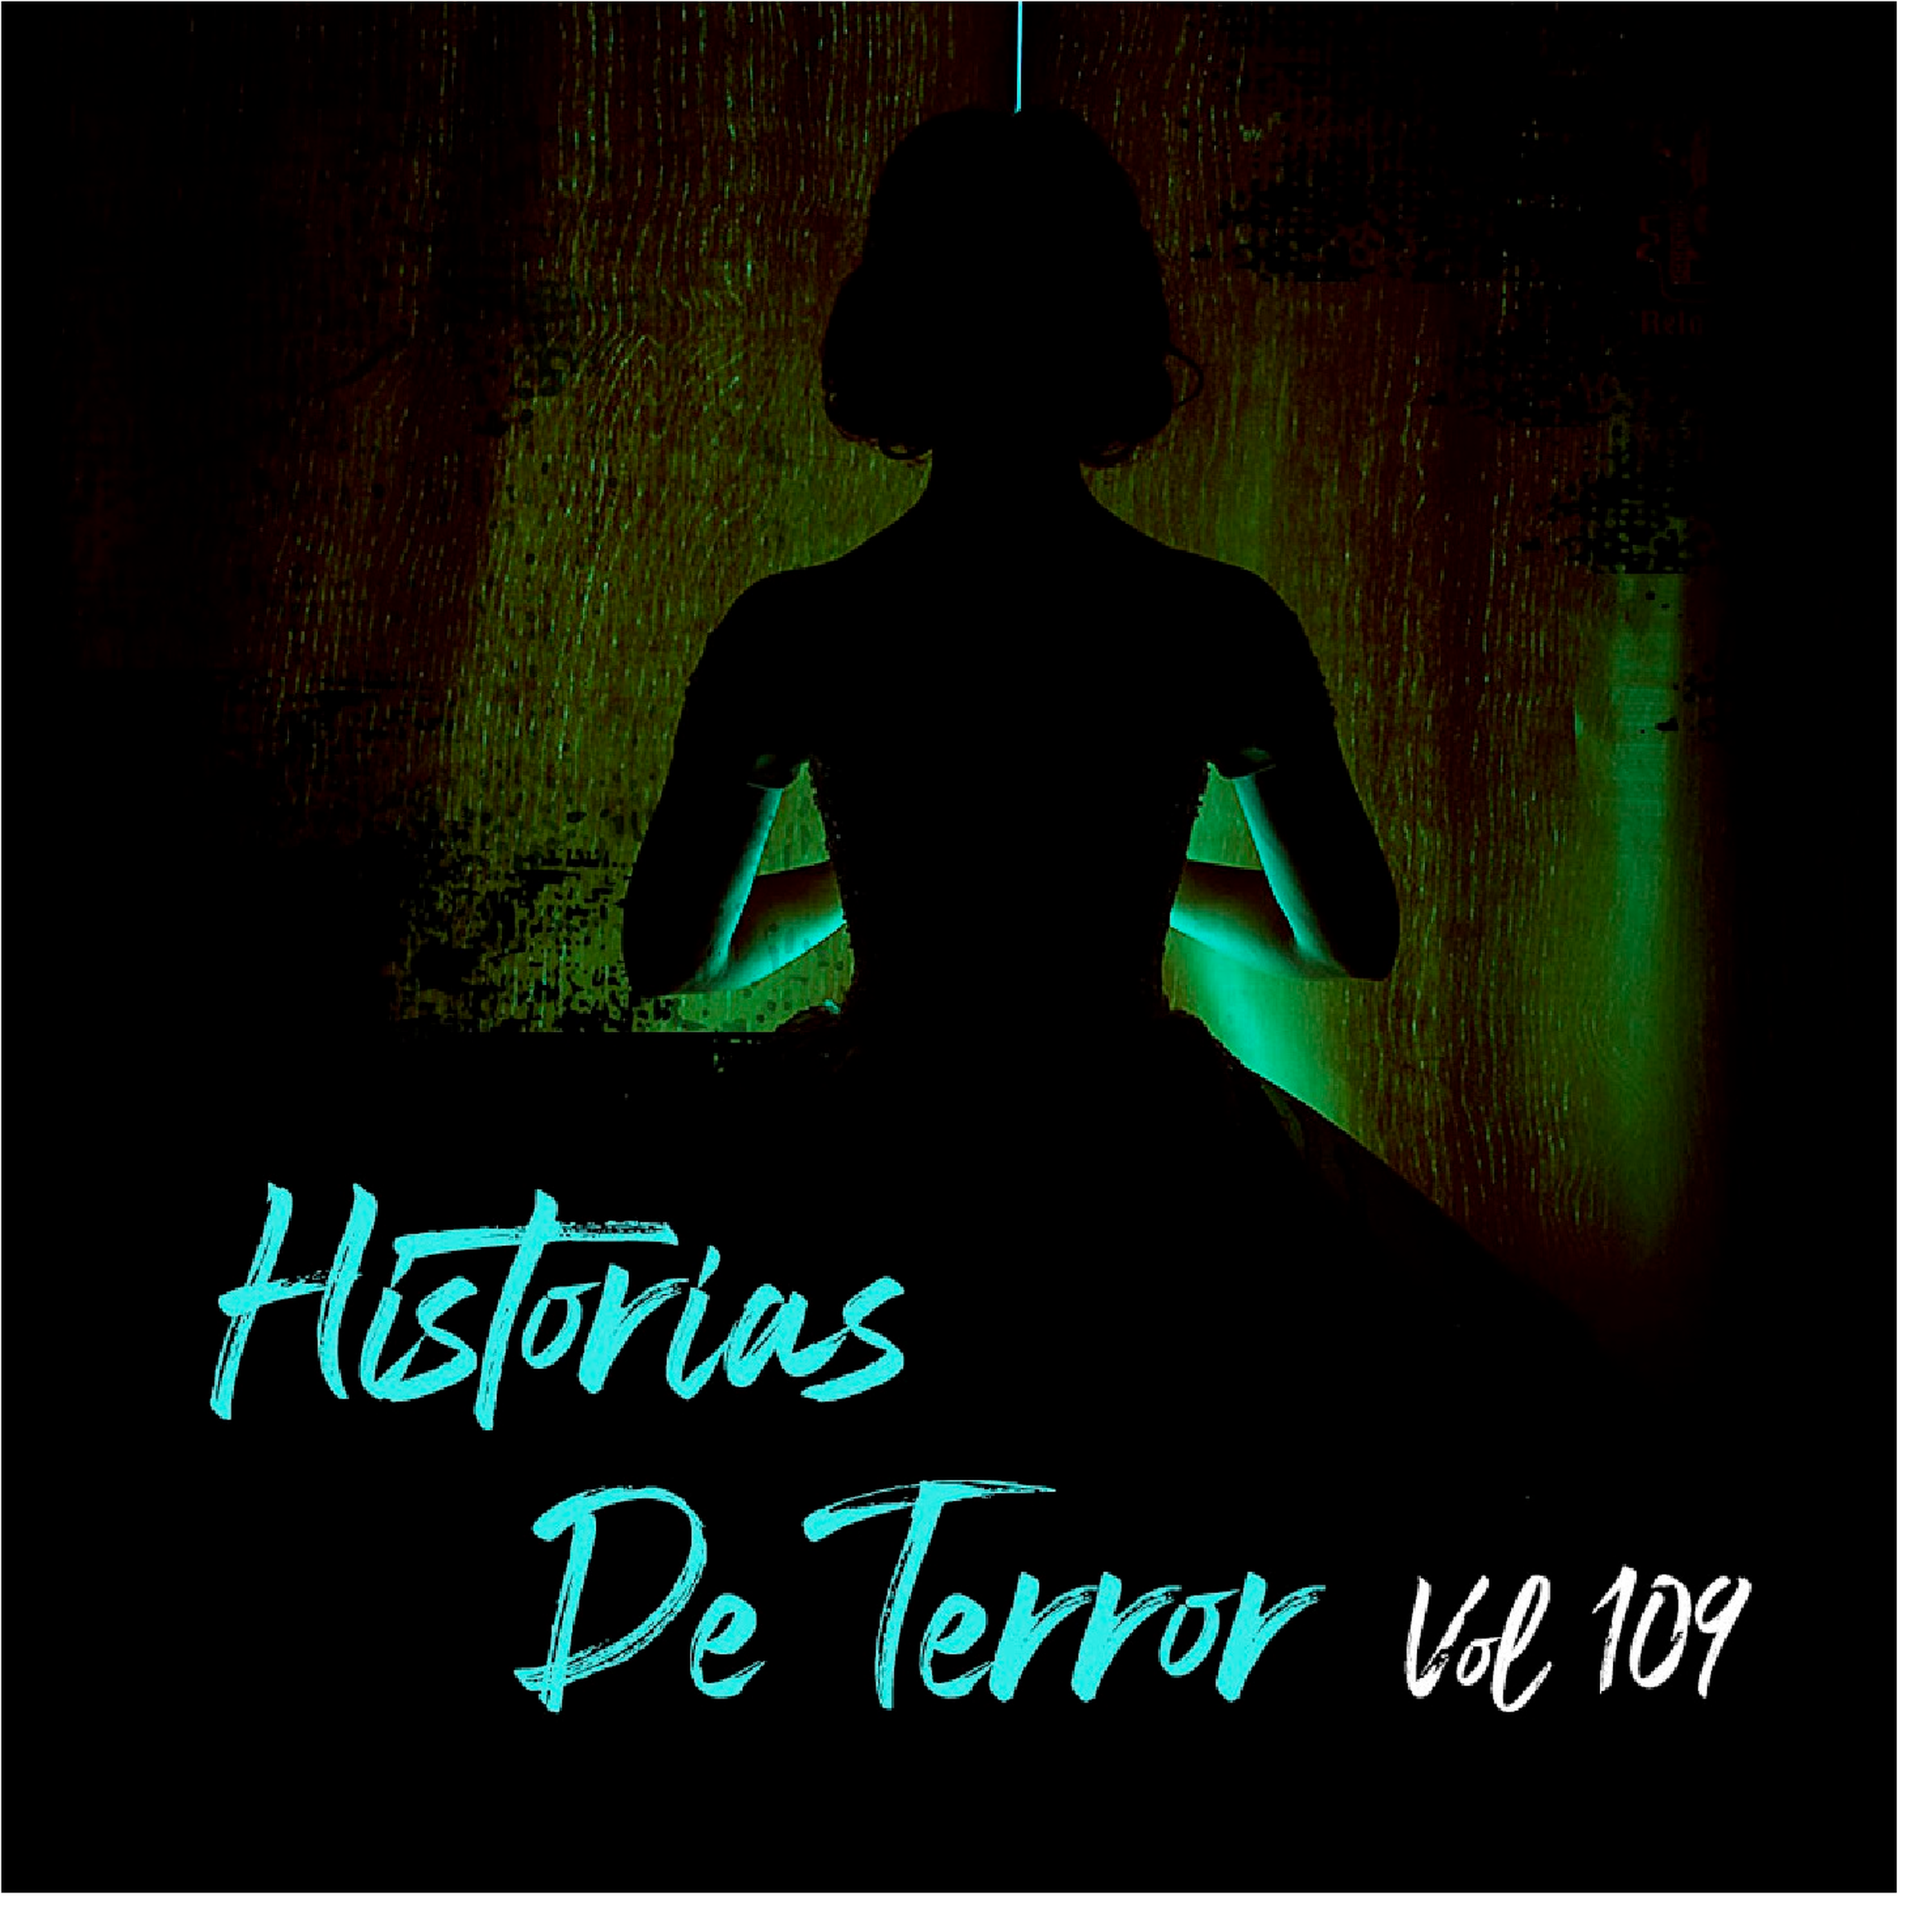 Historias De Terror Vol 109 Relatos De Horror Relatos De Horror Historias De Terror 1493